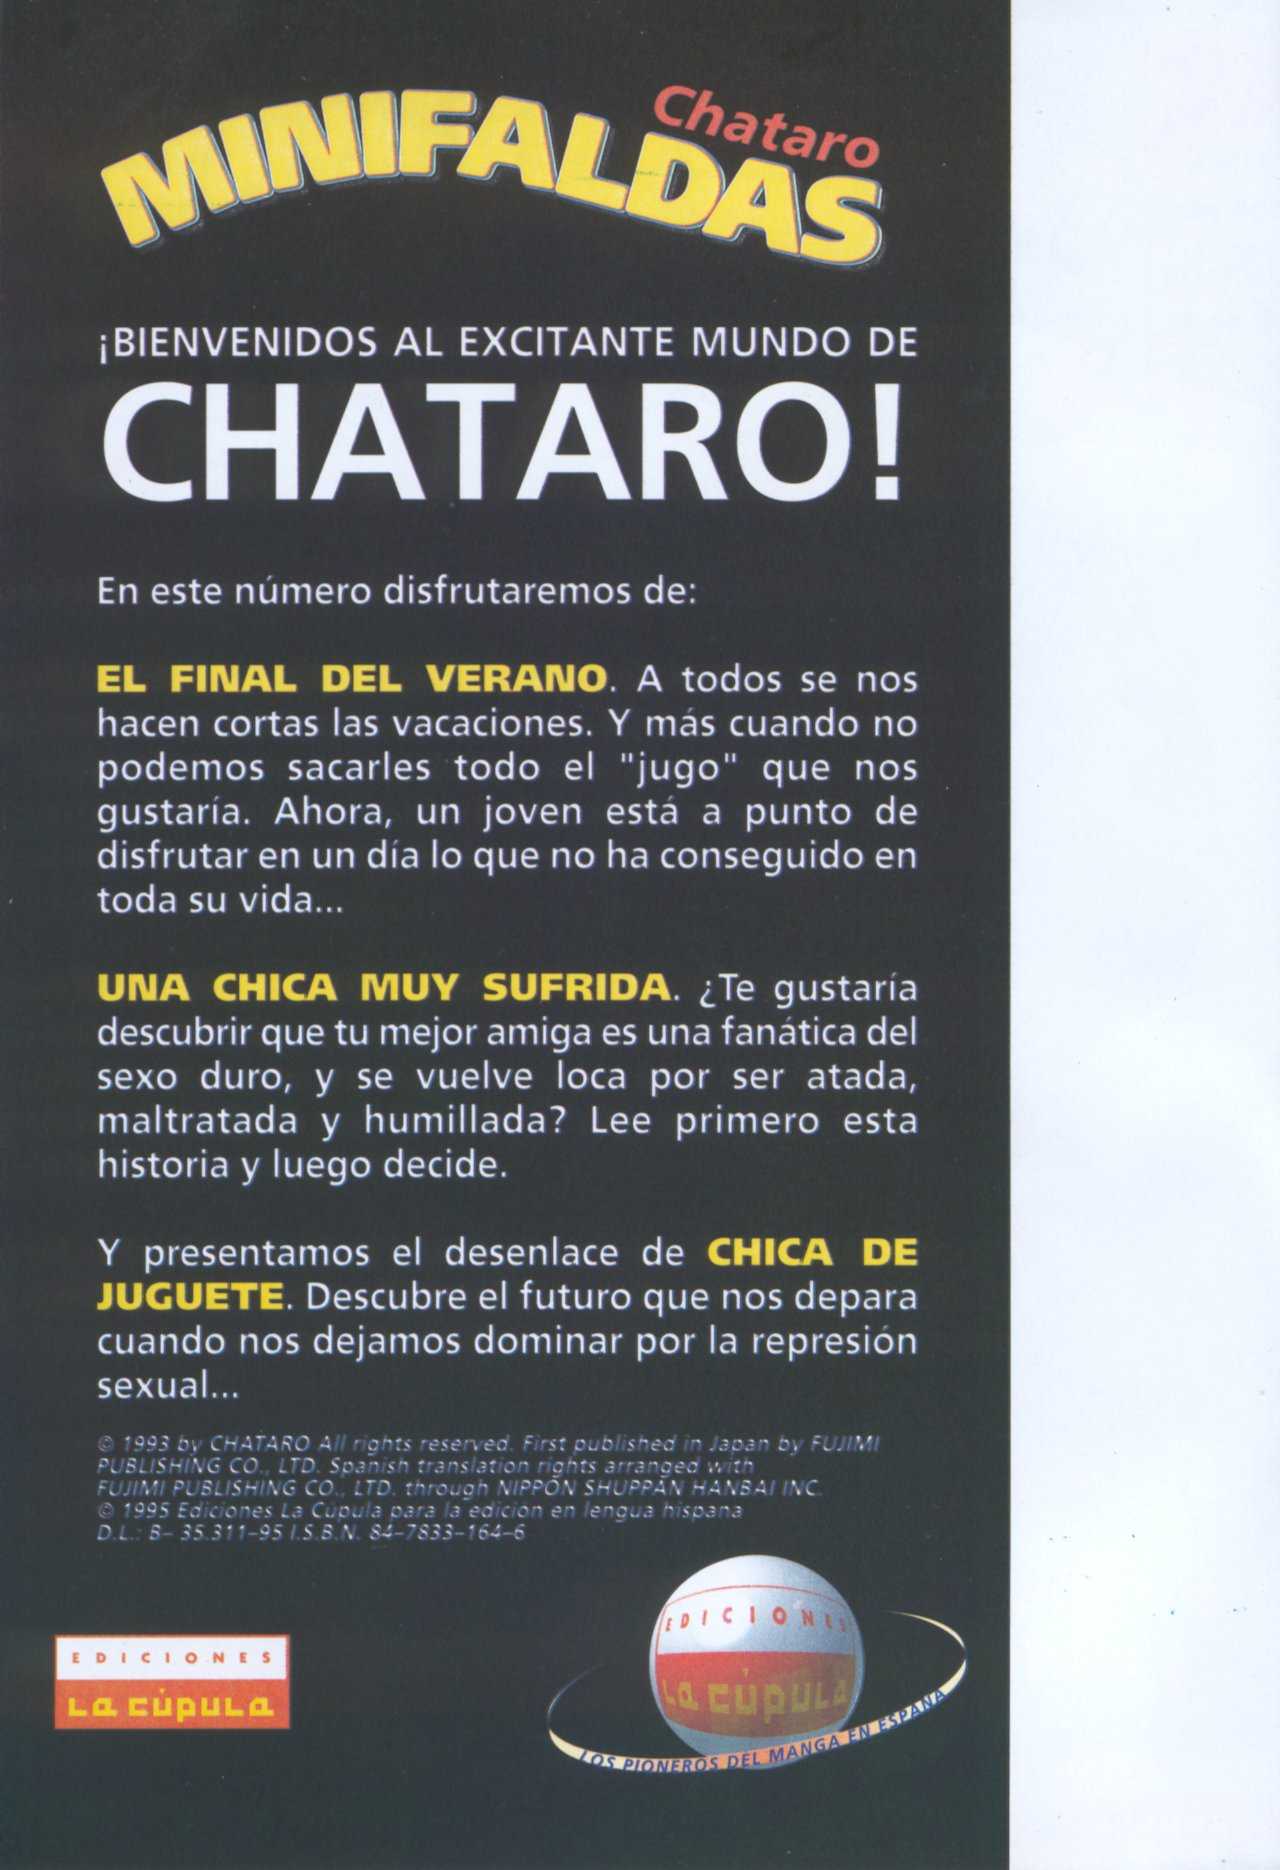 [Chataro] Minifaldas 3  de 4 (Spanish] 